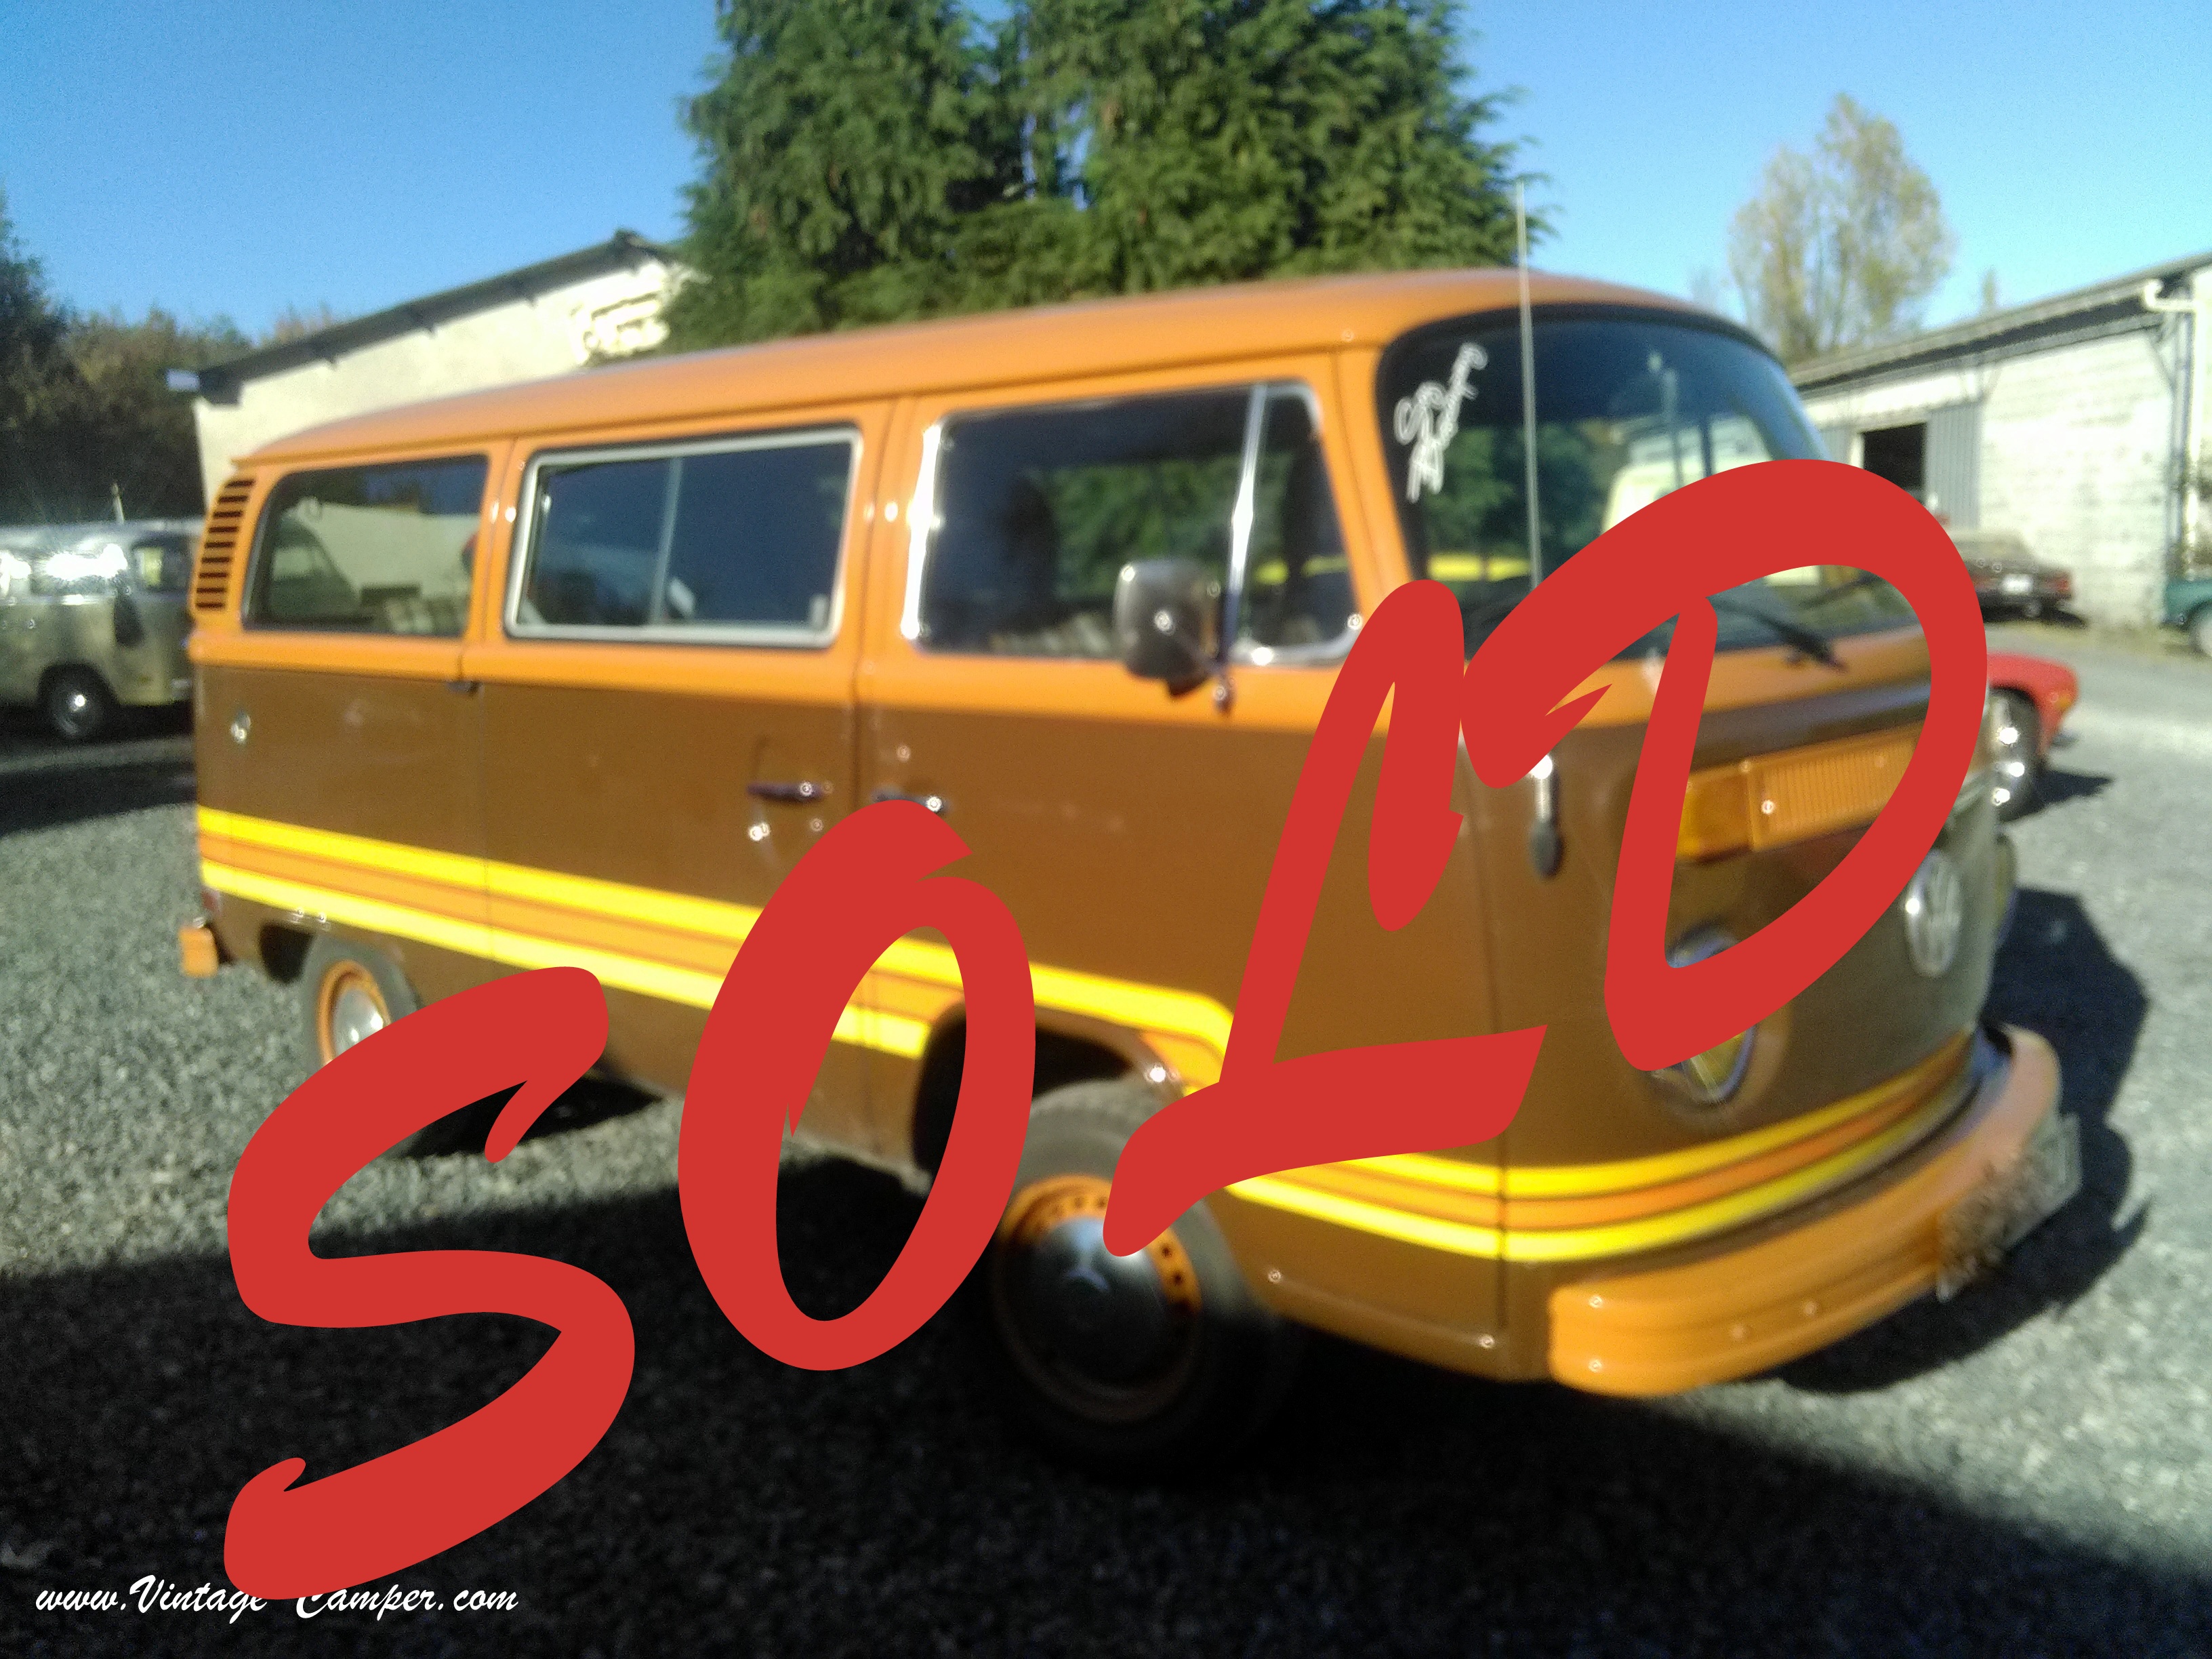 vintage camper van for sale